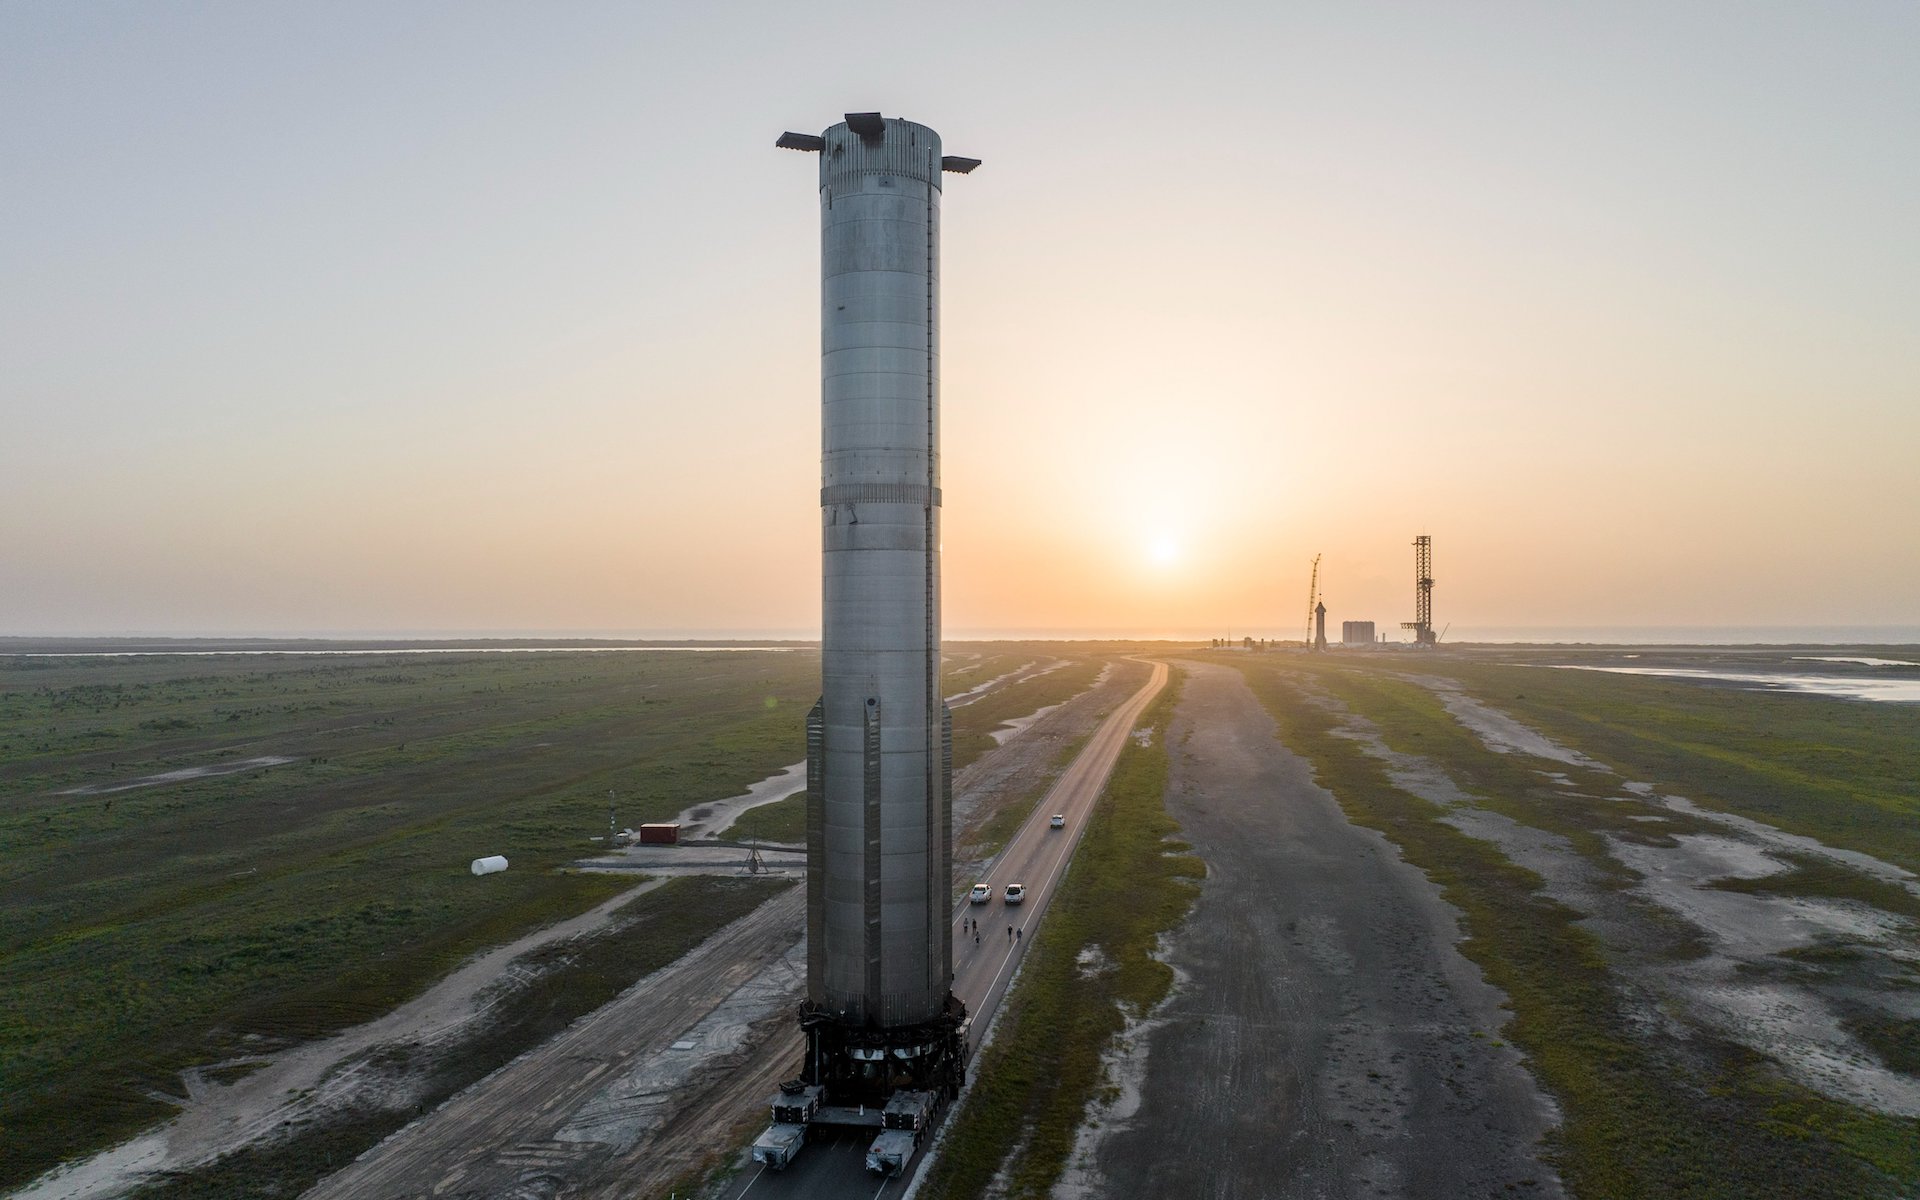 Een extreem zware booster torent hoog boven het vlakke landschap van Texas uit terwijl hij naar het lanceerplatform wordt getransporteerd.